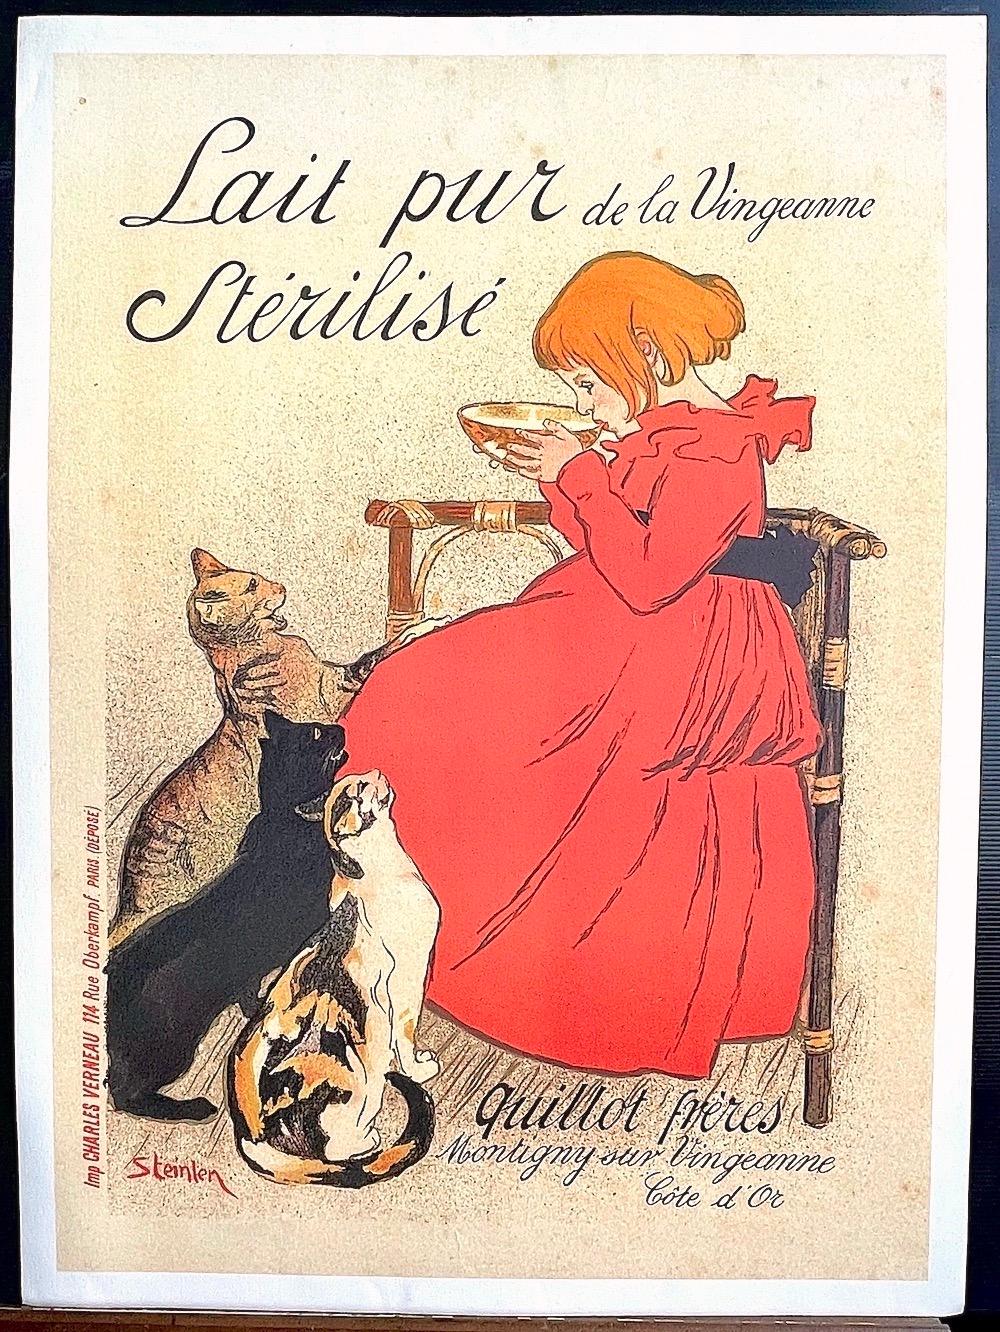 Lait Pur de la Vingeanne Stérilisé ist ein lithografischer Offsetdruck nach dem Original-Werbeplakat von Théophile Steinlen aus den Jahren 1894-95 der Belle Epoque, gedruckt im 4-Farben-Offsetdruck auf schwerem Archivpapier. Lait Pur de la Vingeanne